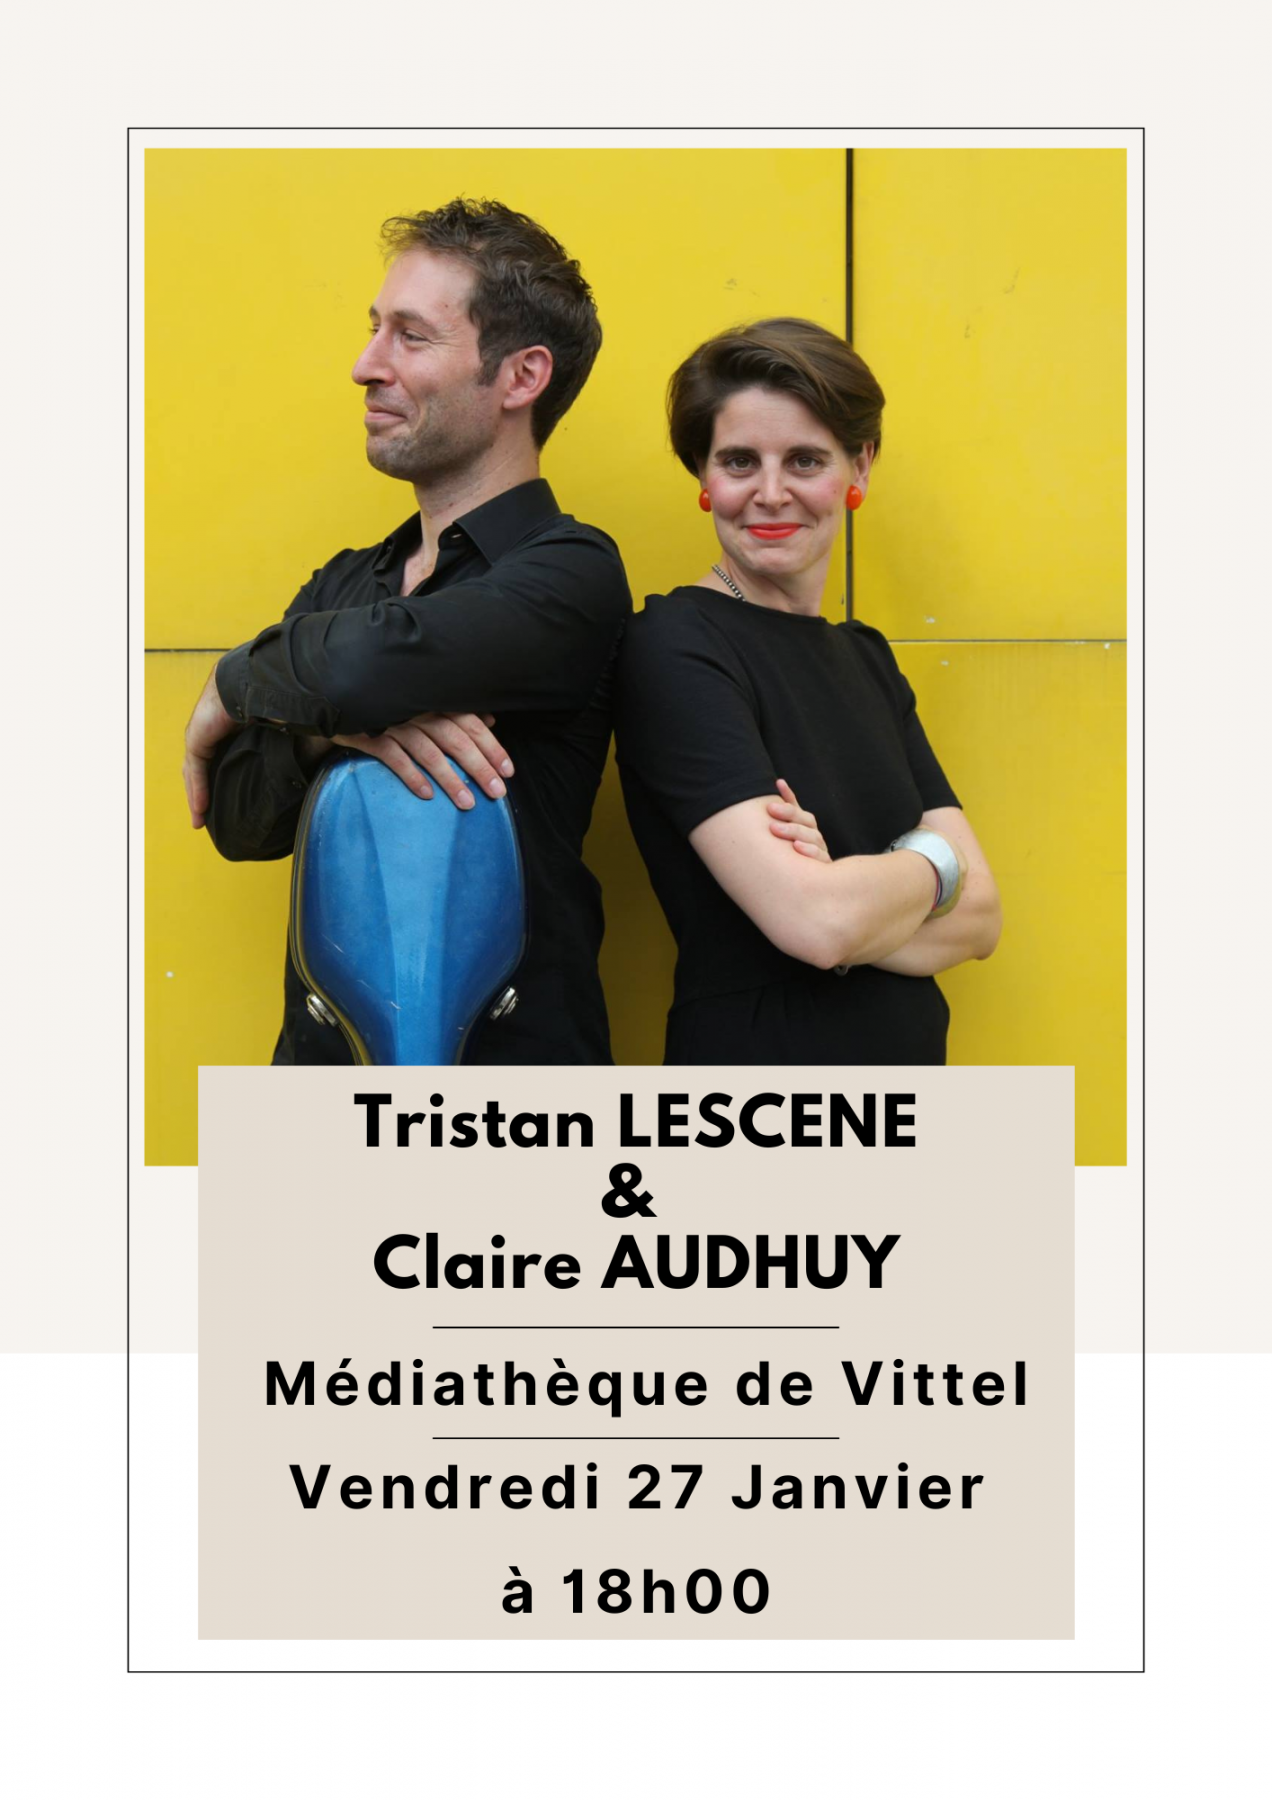 Conférence de Tristan LESCENE & Claire ANDHUY